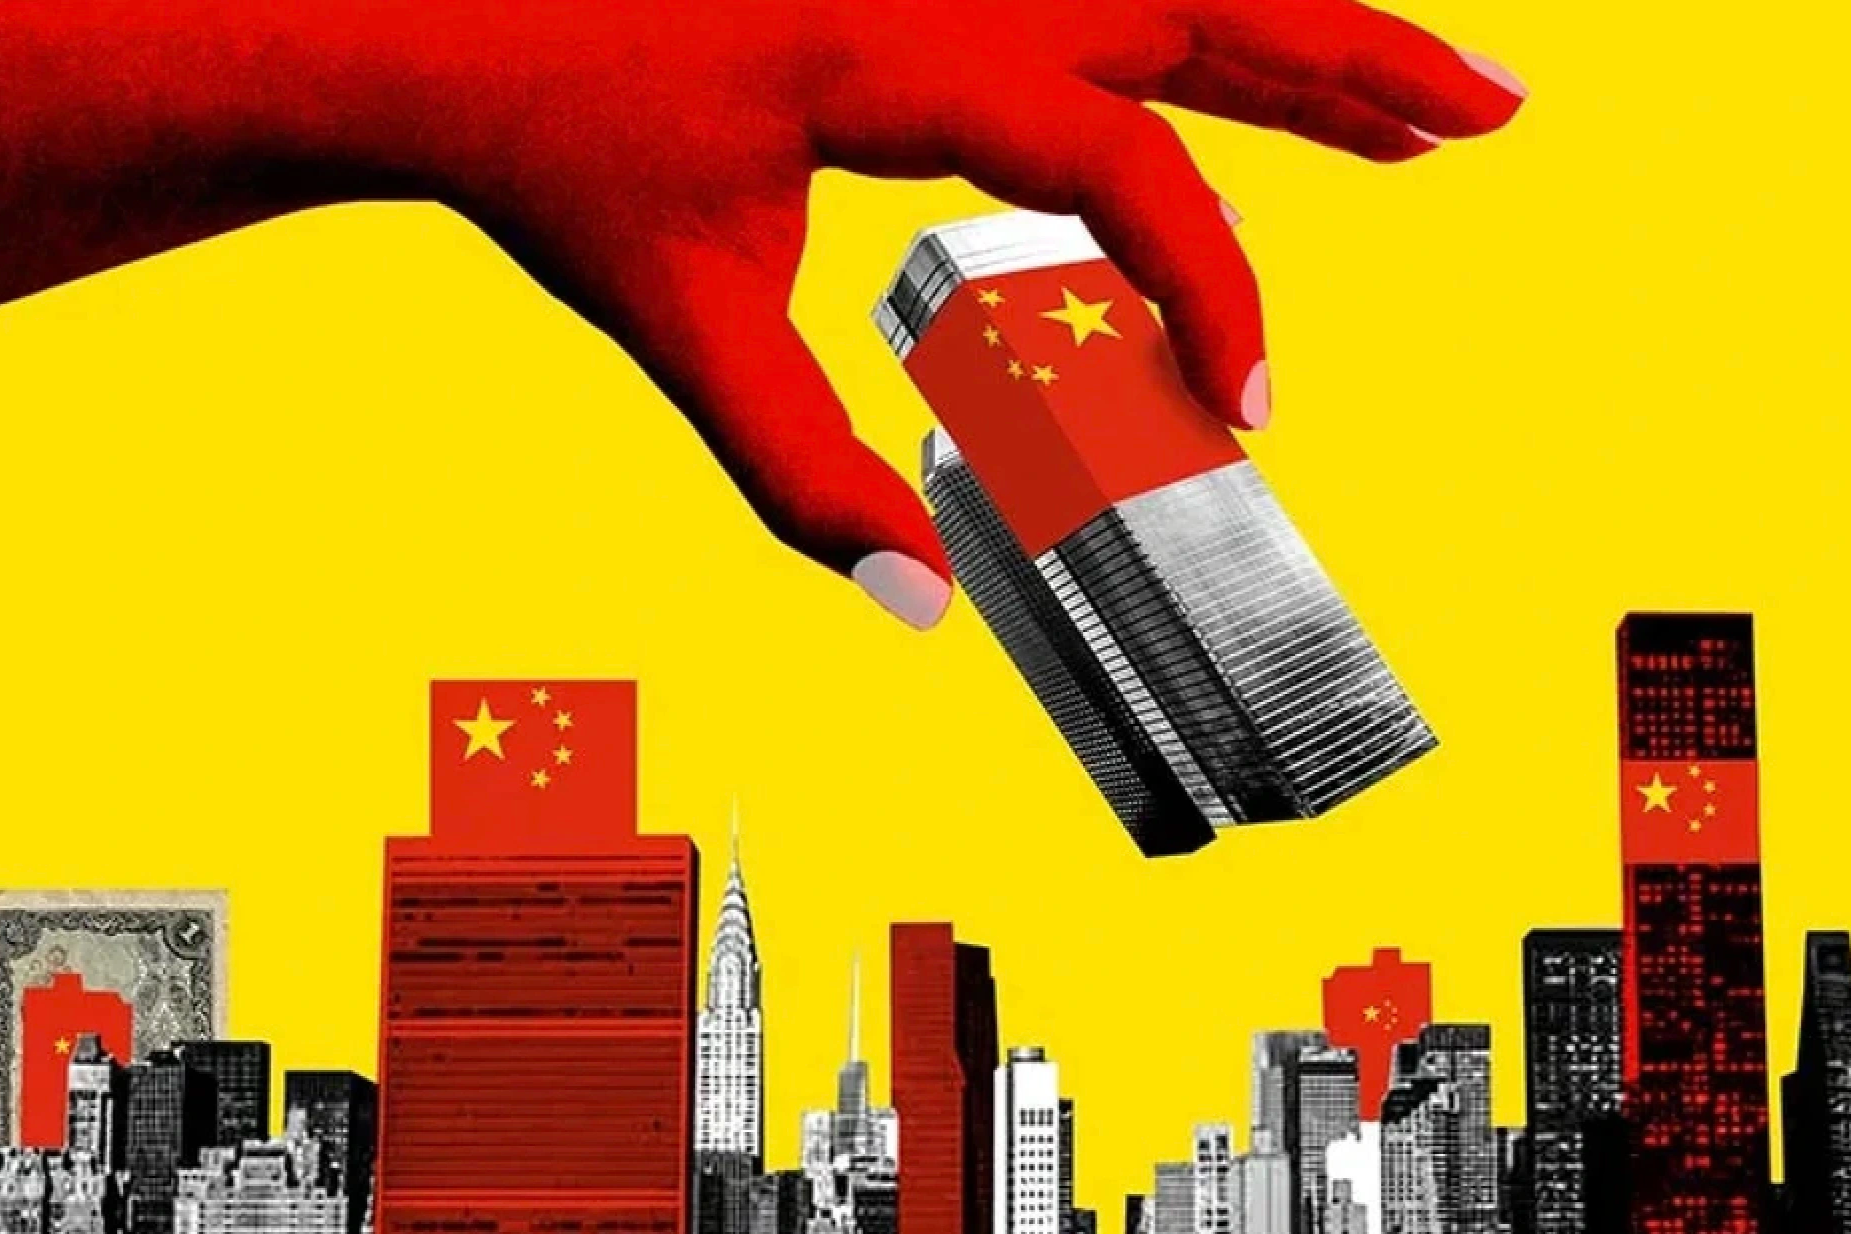 "Bong bóng" bất động sản Trung Quốc: Người mua nộp tiền 8 năm chưa có nhà